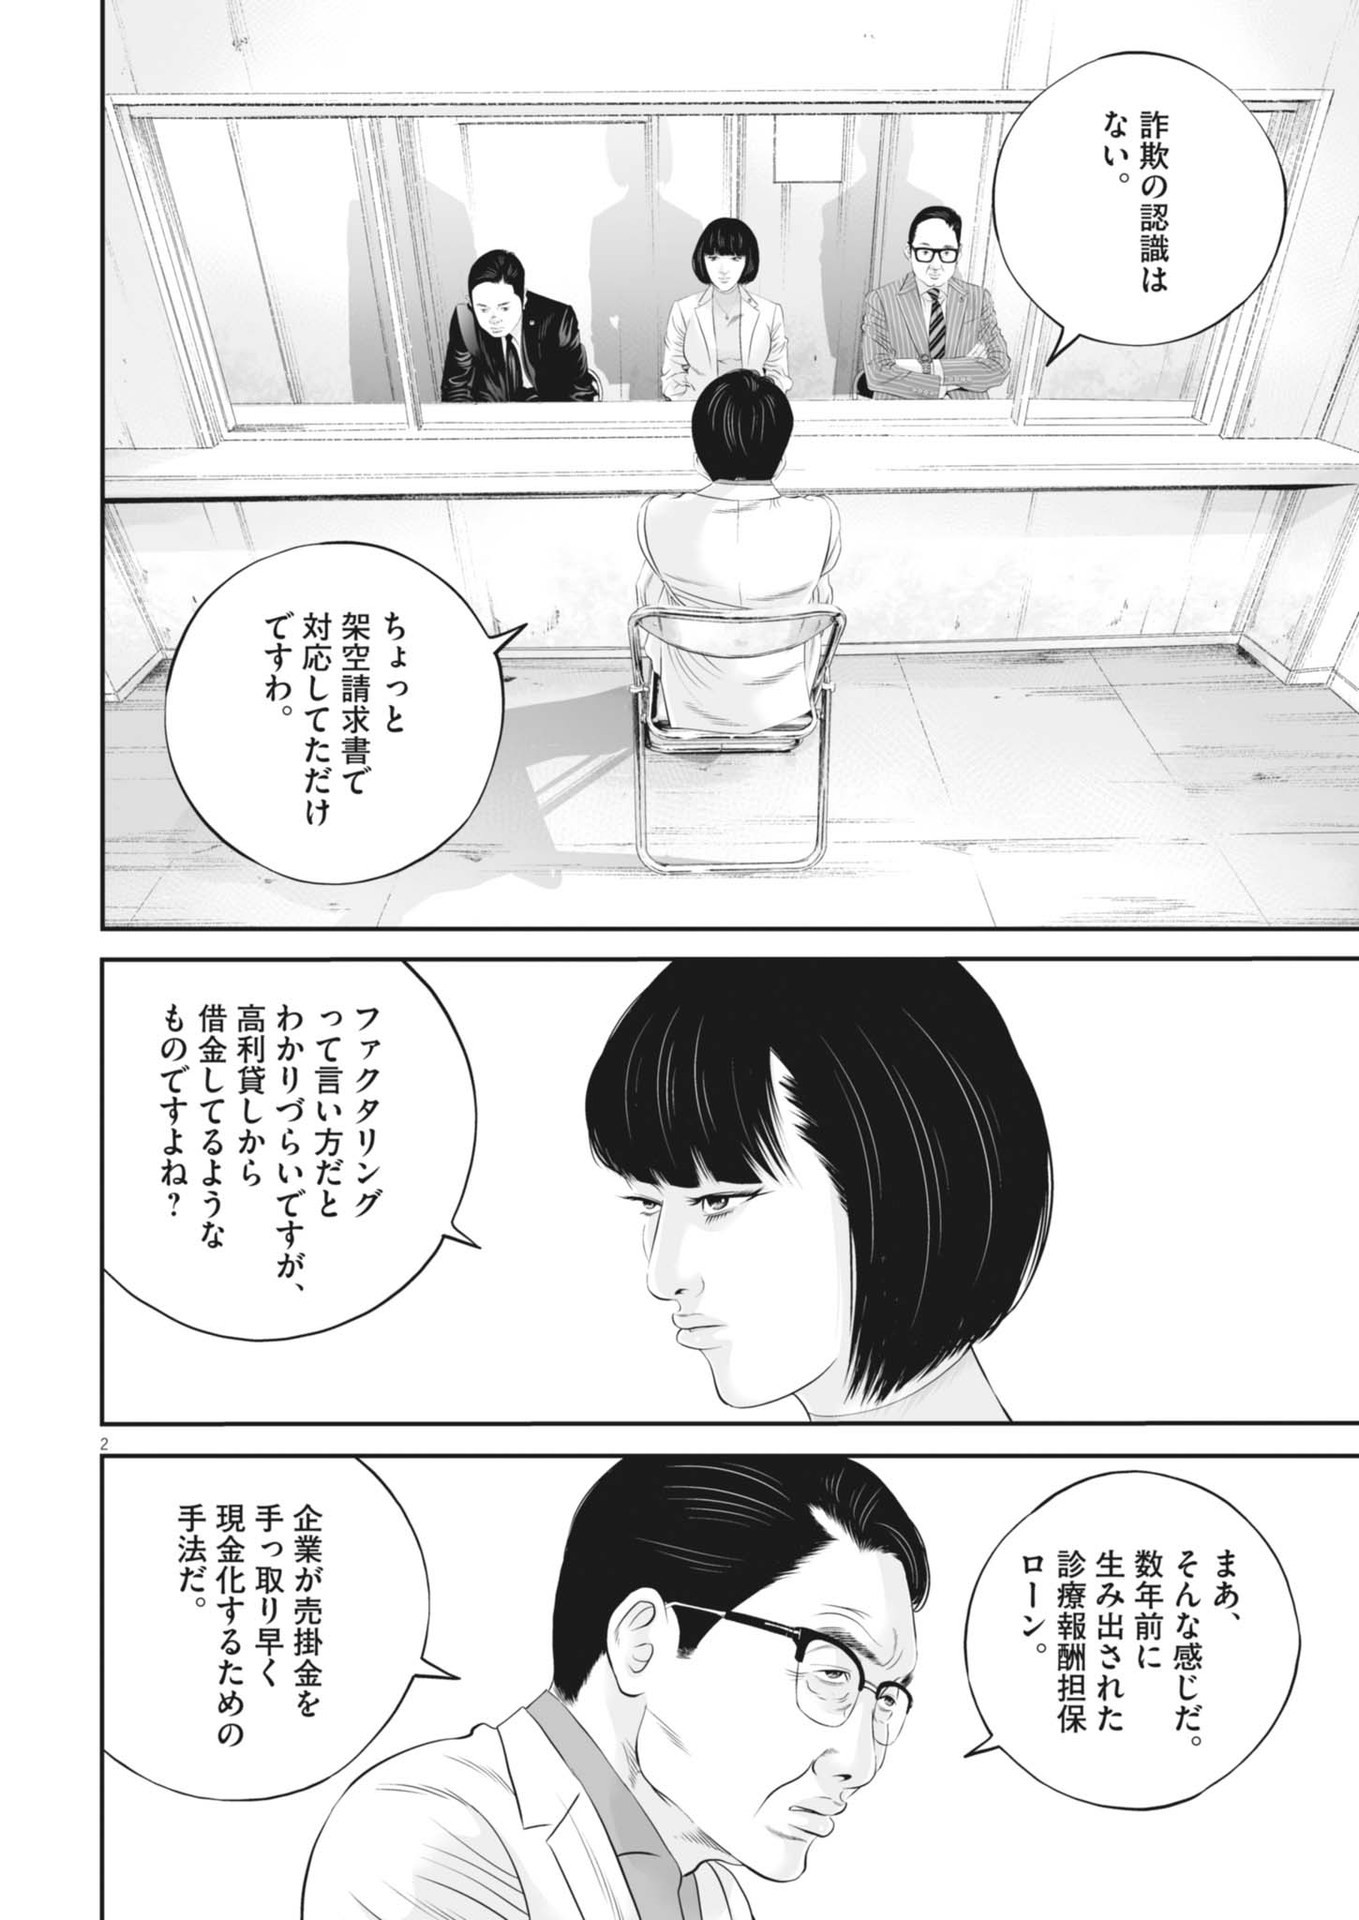 Kujou no Taizai - Chapter 99 - Page 2